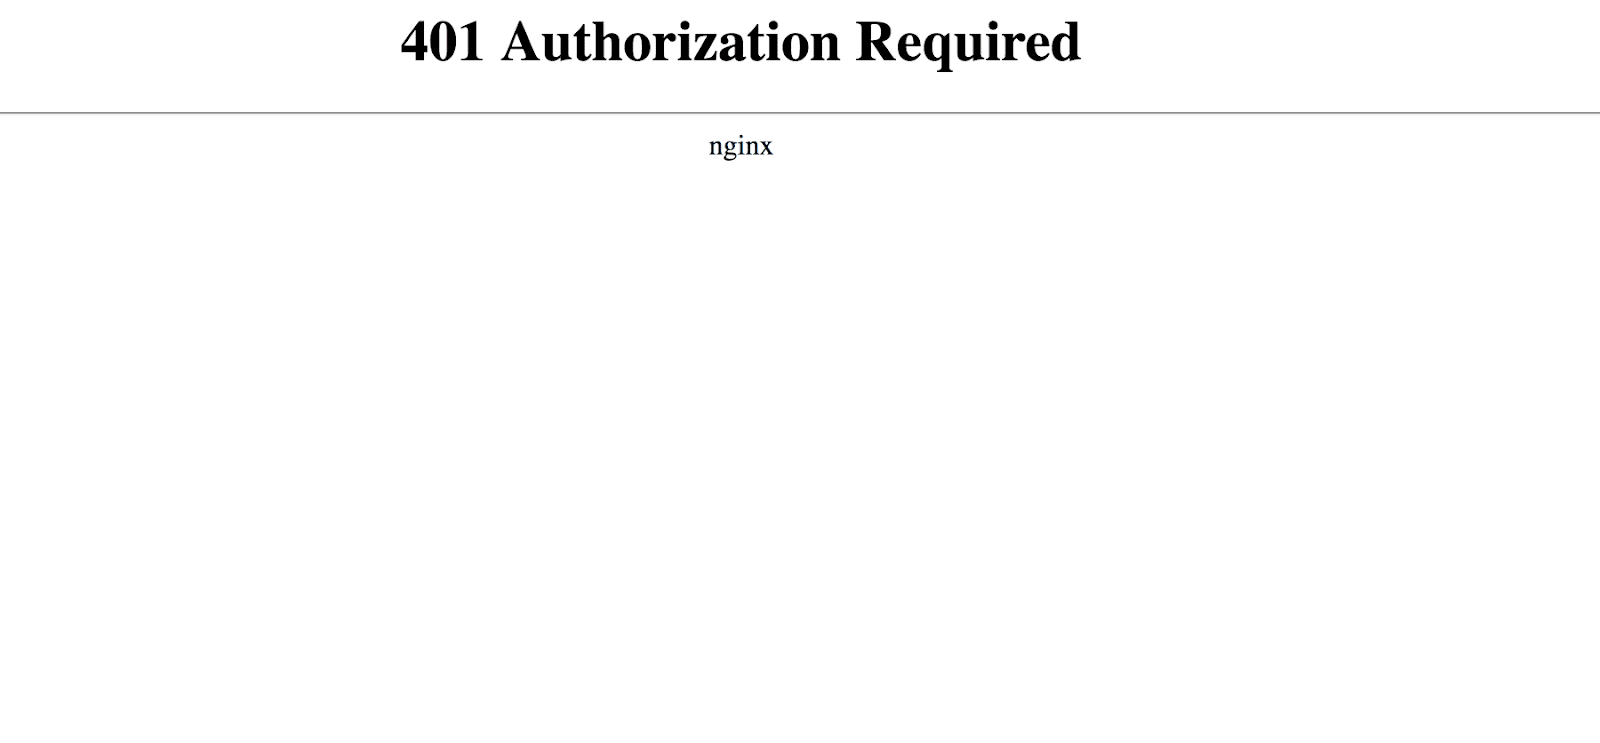 Error 401 Authorization request